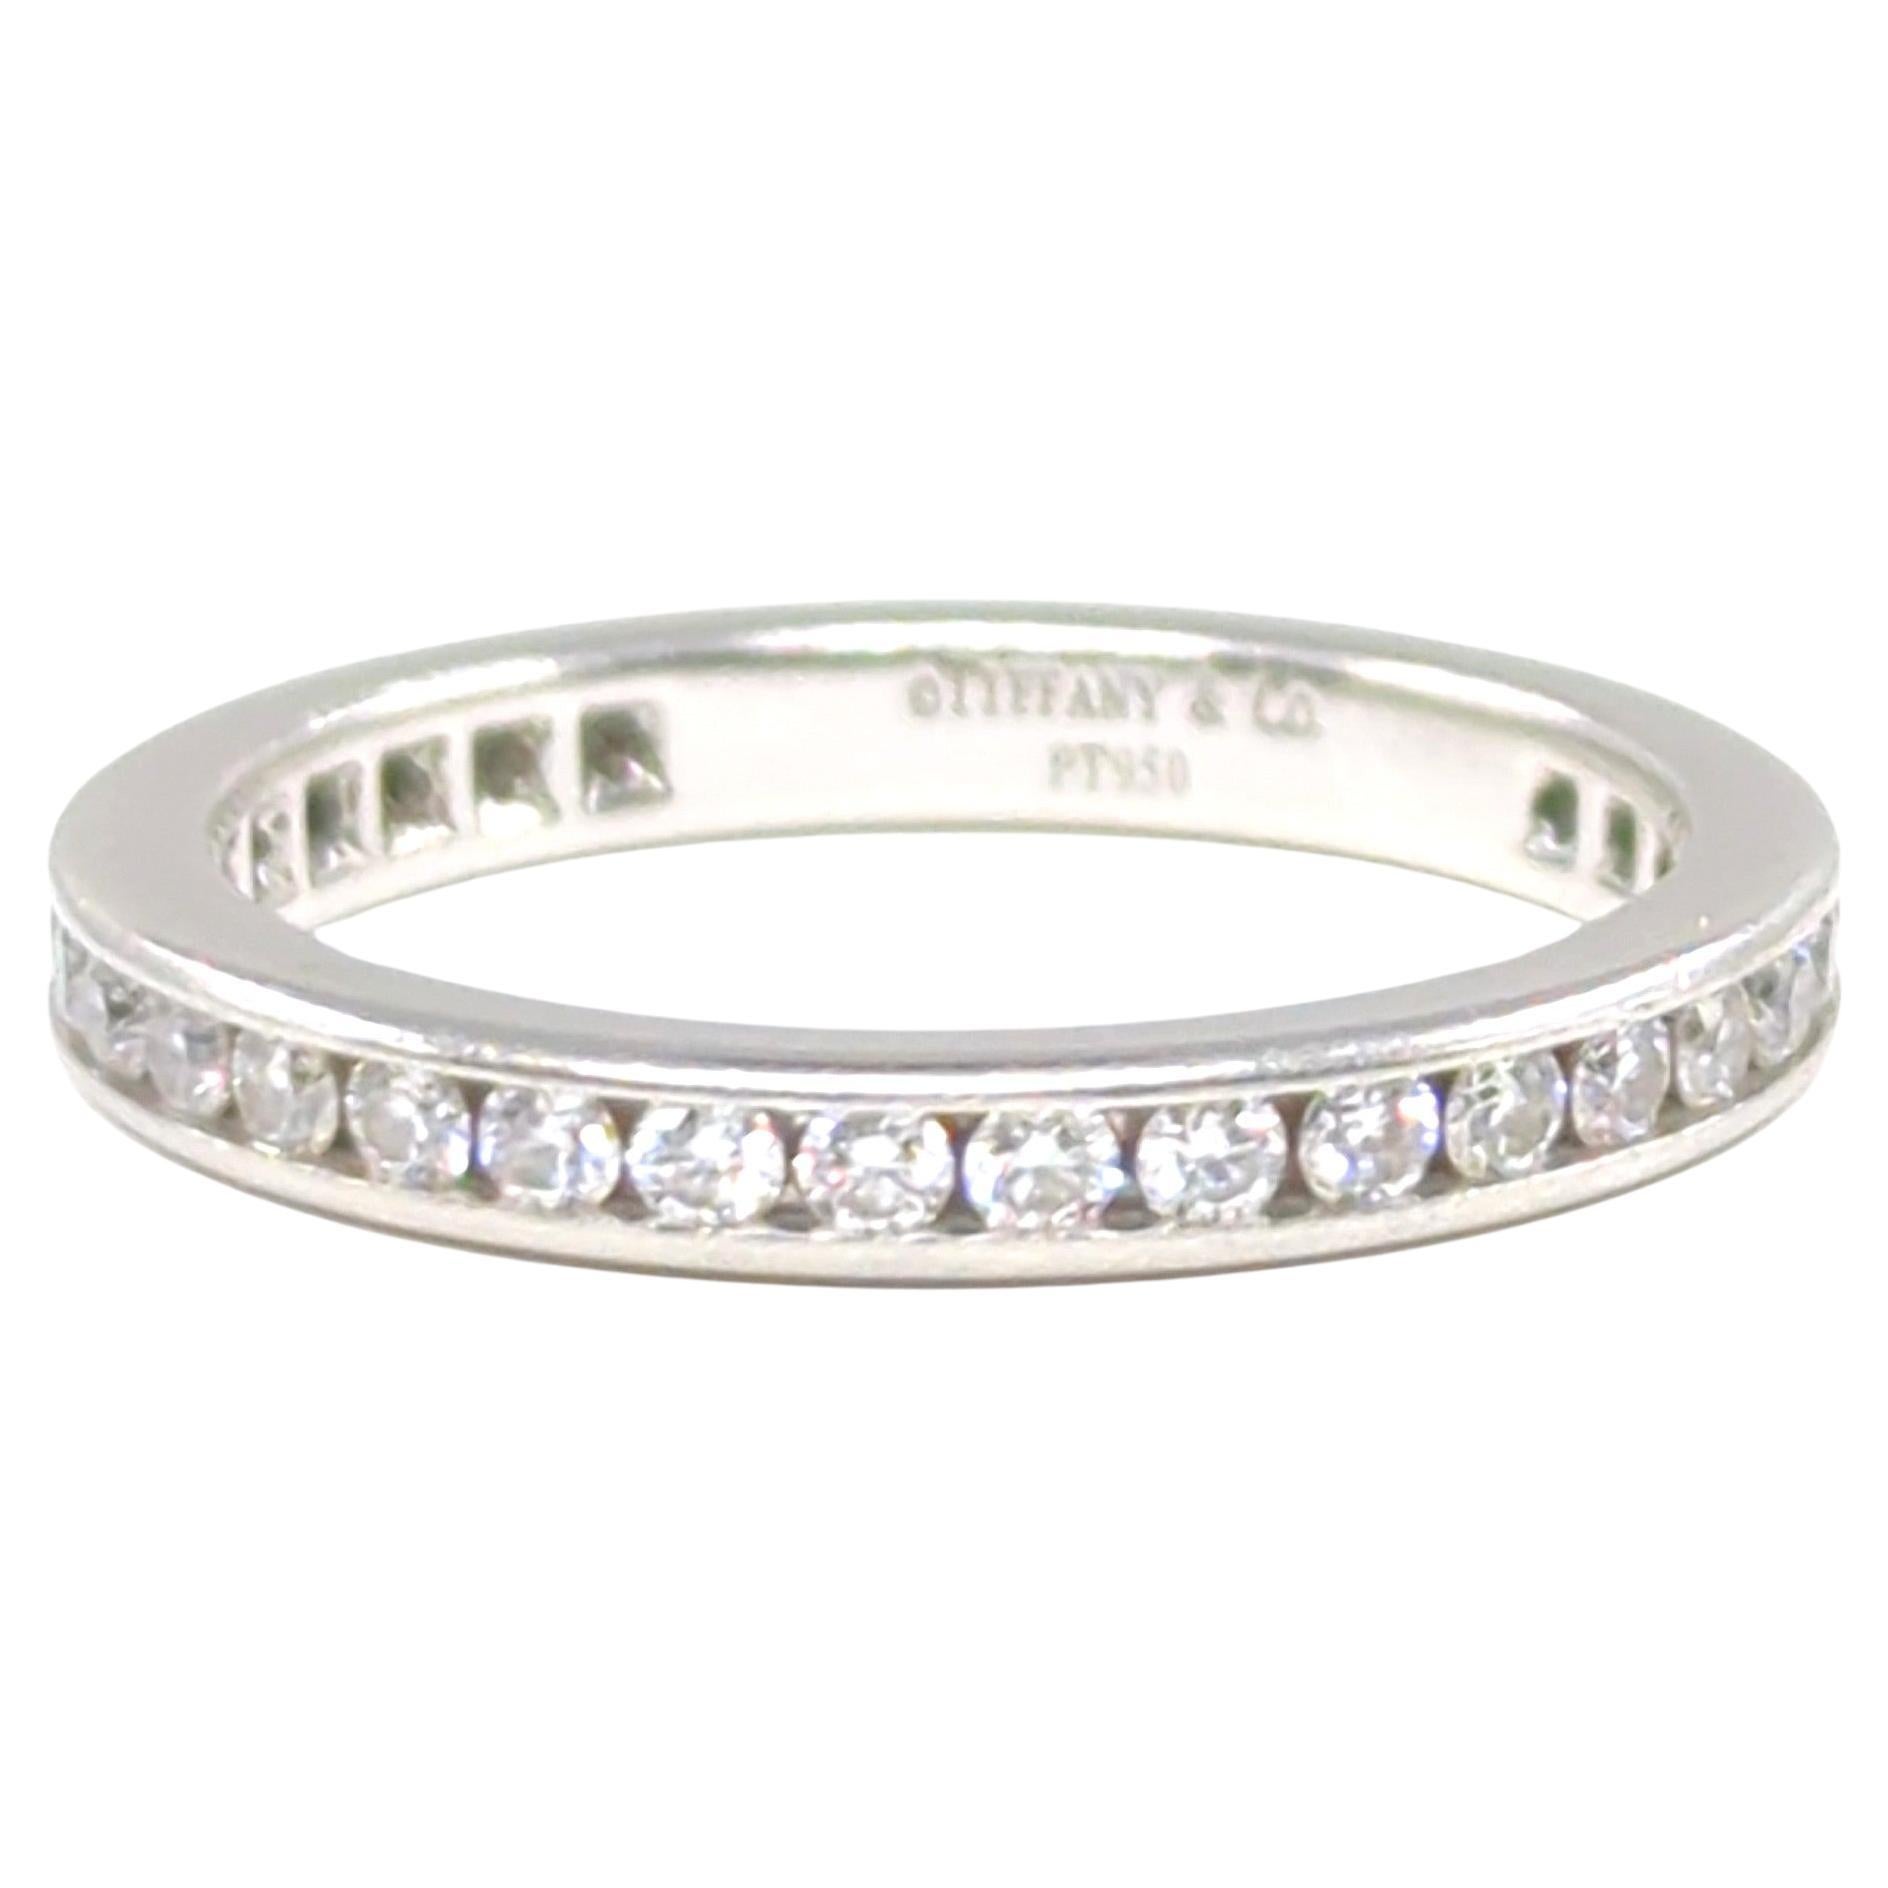 Tiffany & Co. Iconic Diamond Full Circle Eternity Band Ring 0.73 CTW Size 5.5